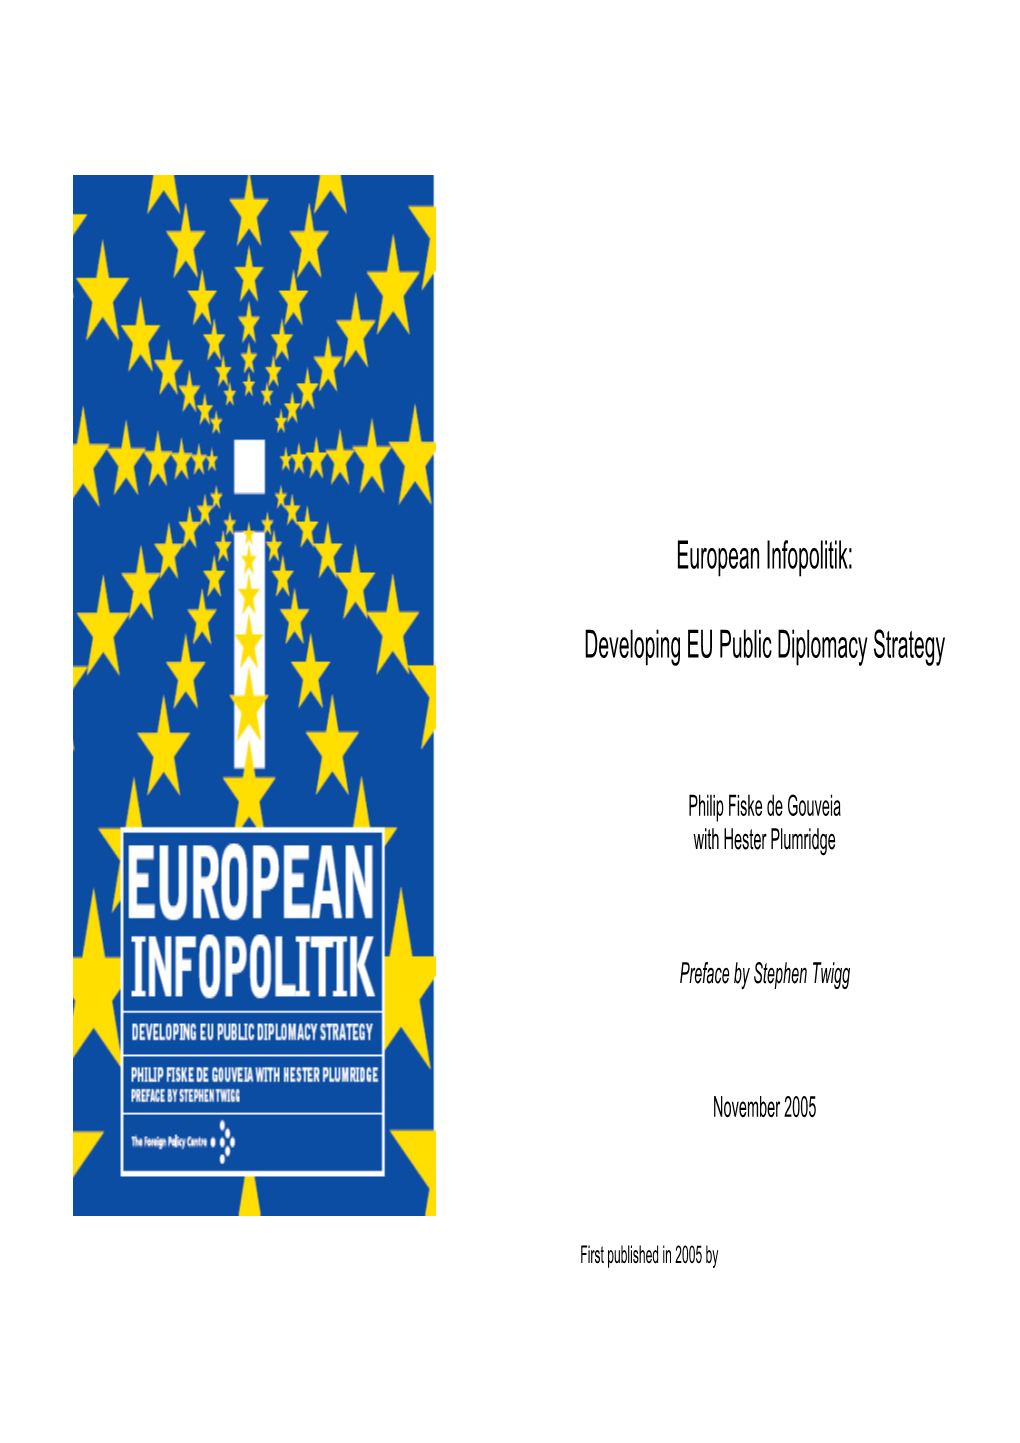 European Infopolitik: Developing EU Public